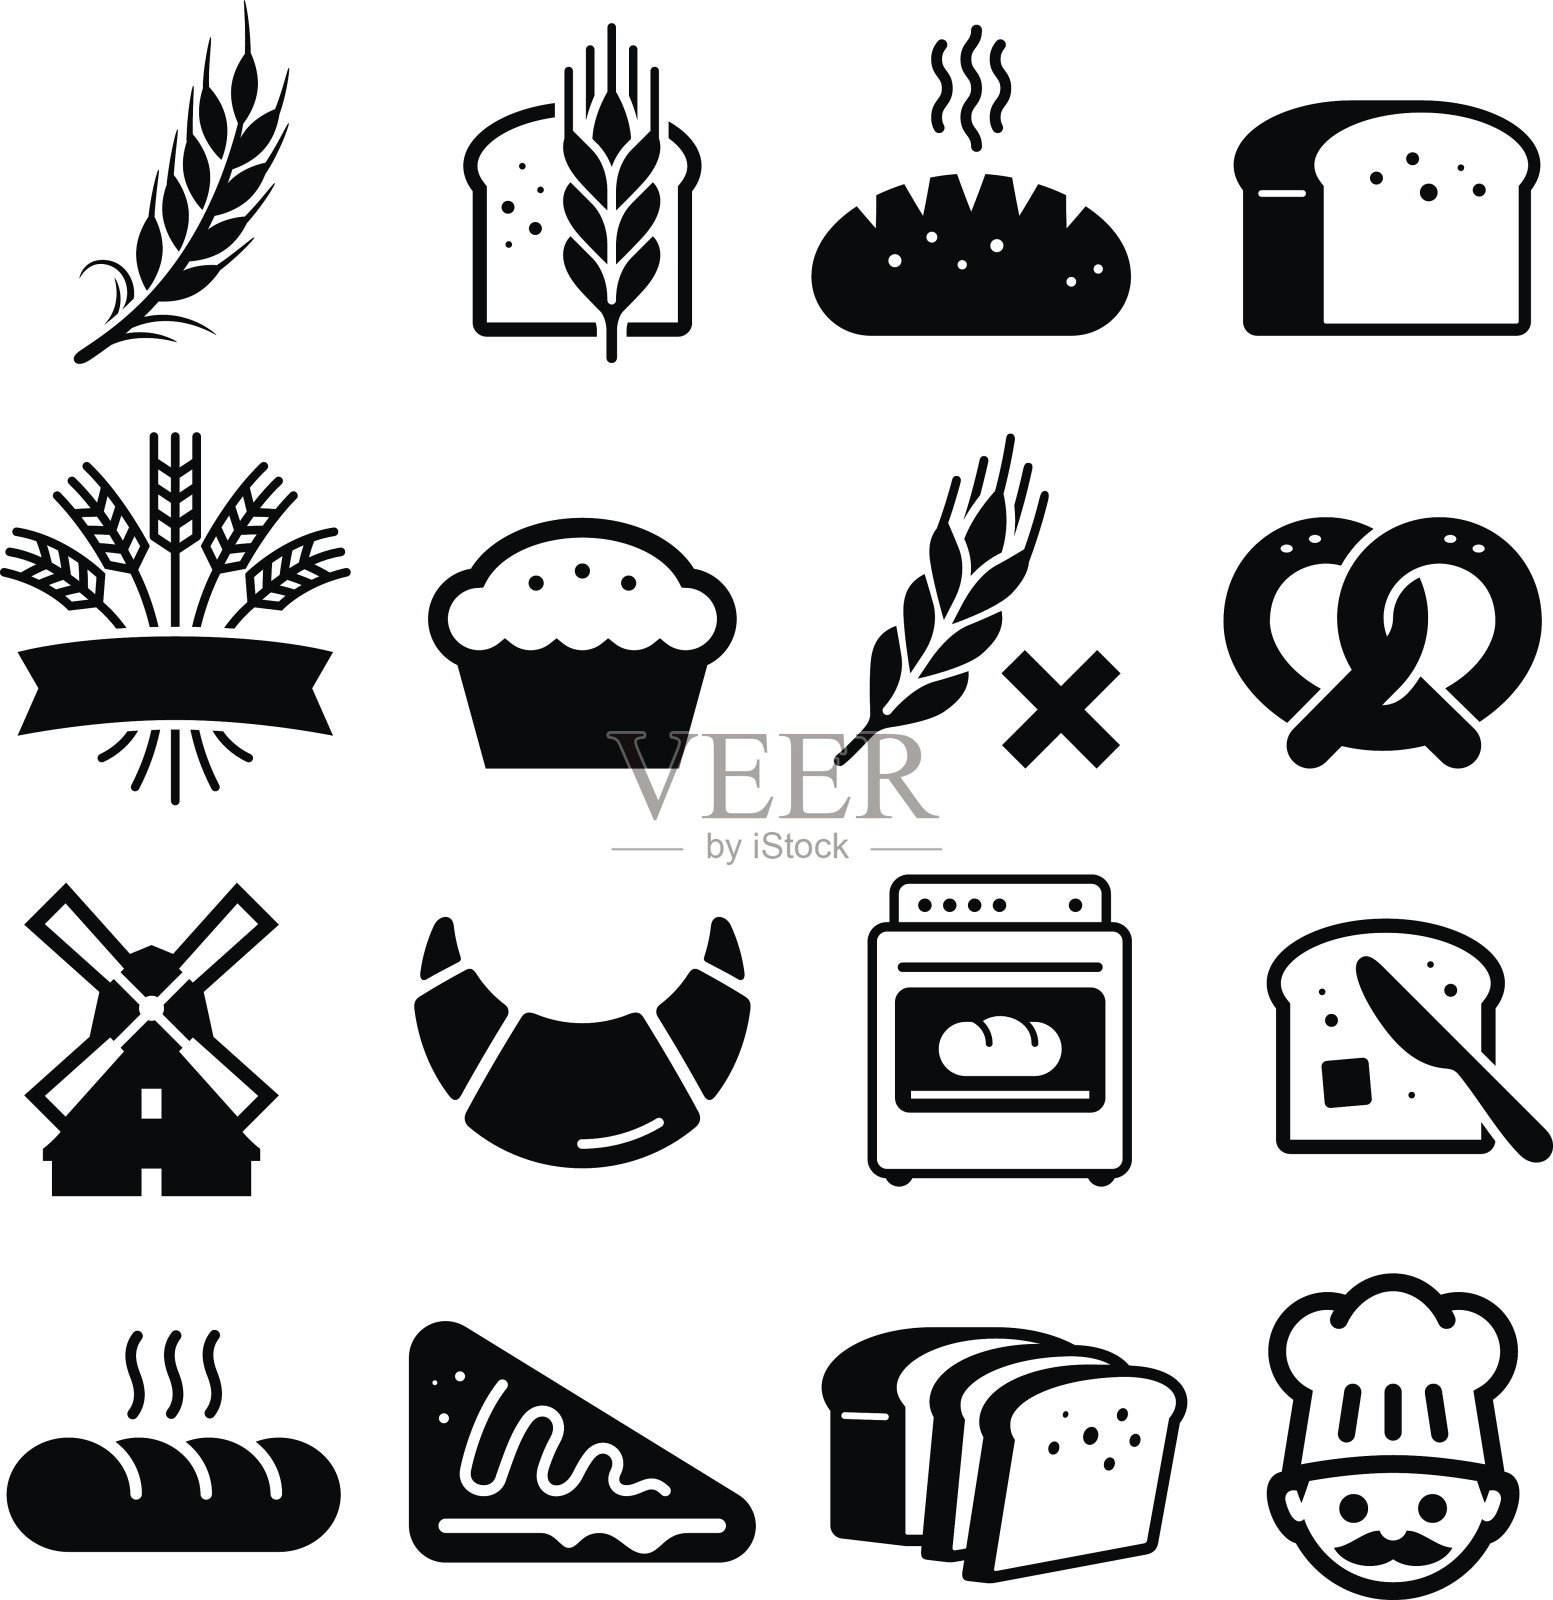 面包和谷物图标-黑色系列图标素材